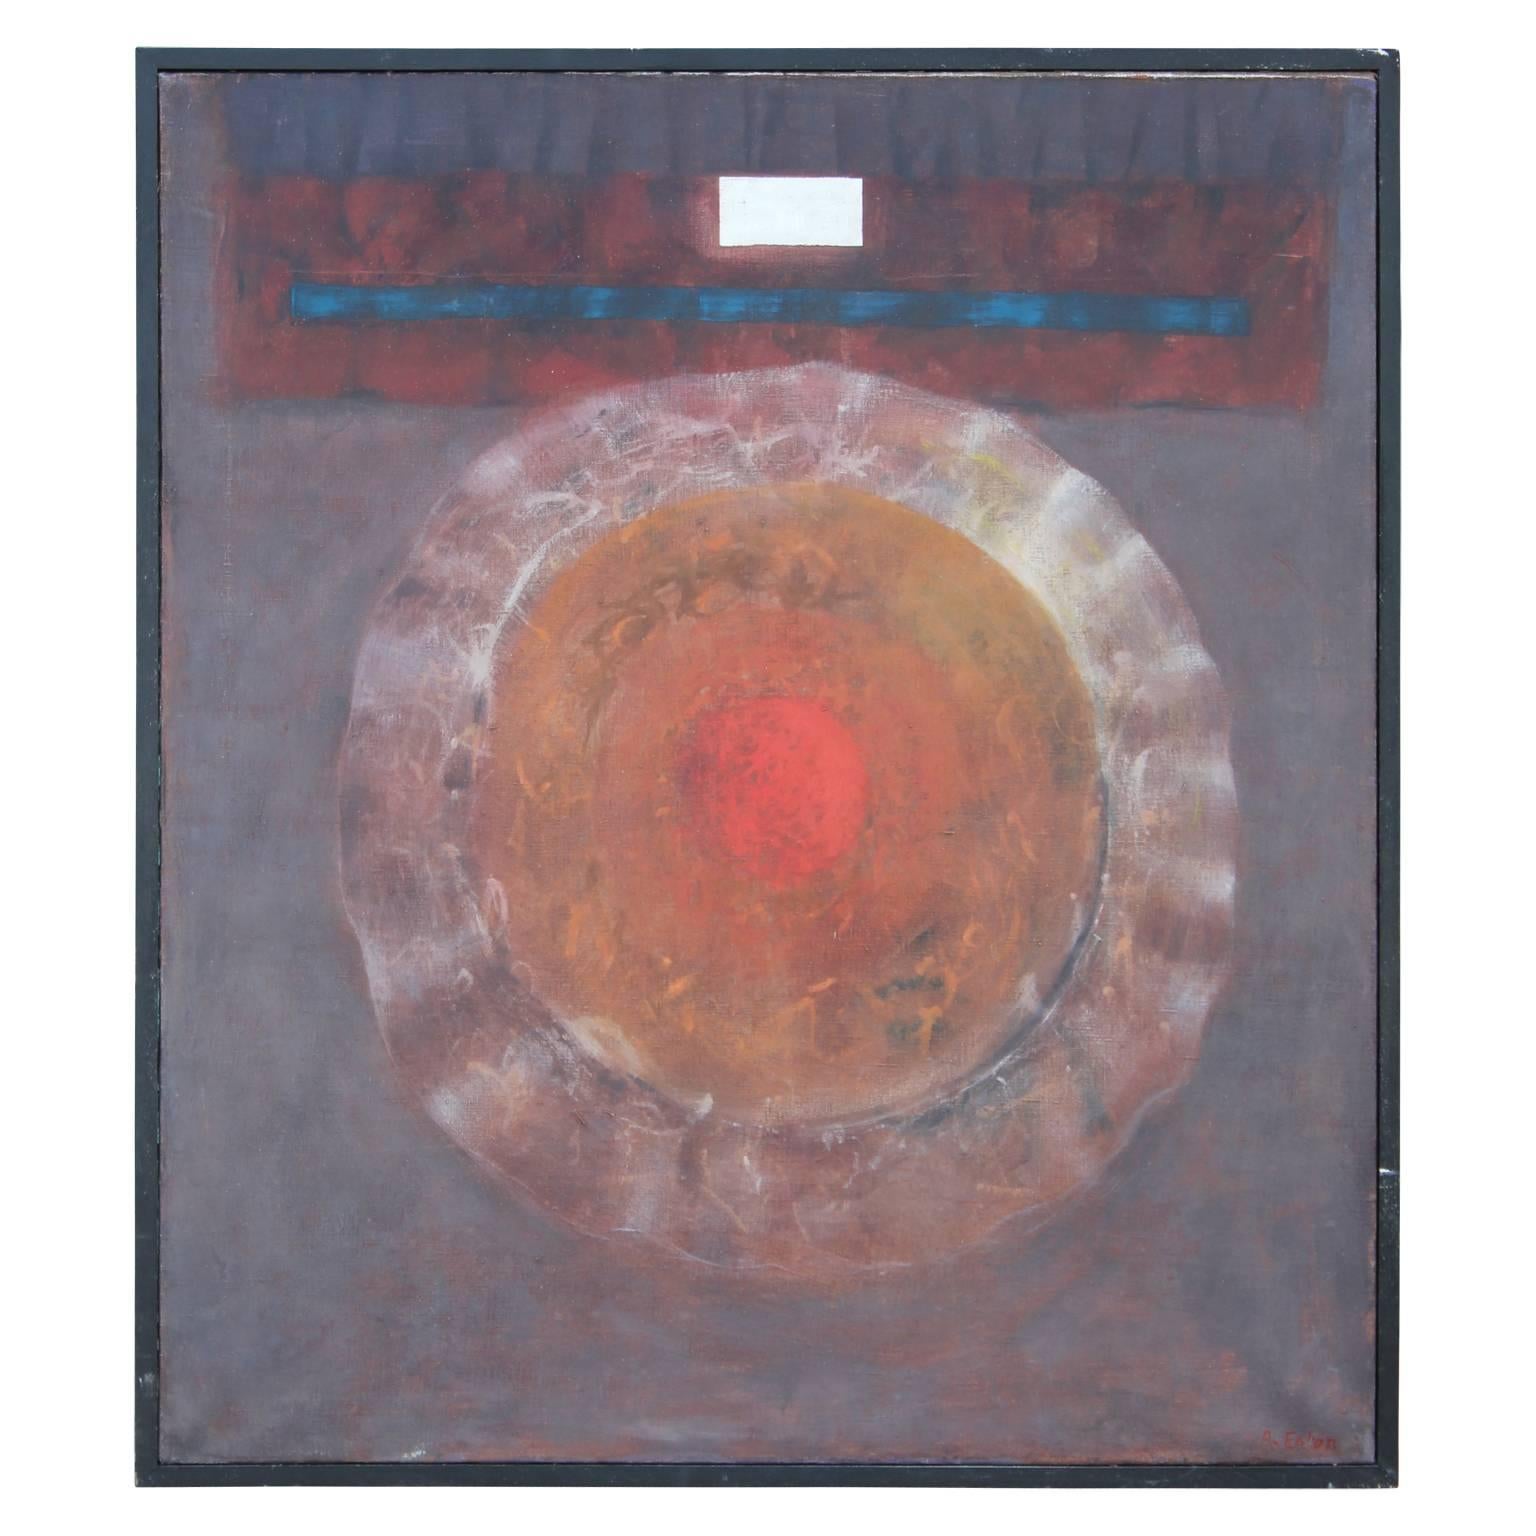 Robert B. Eaton Abstract Drawing - "Medallion" Circular Red Abstract